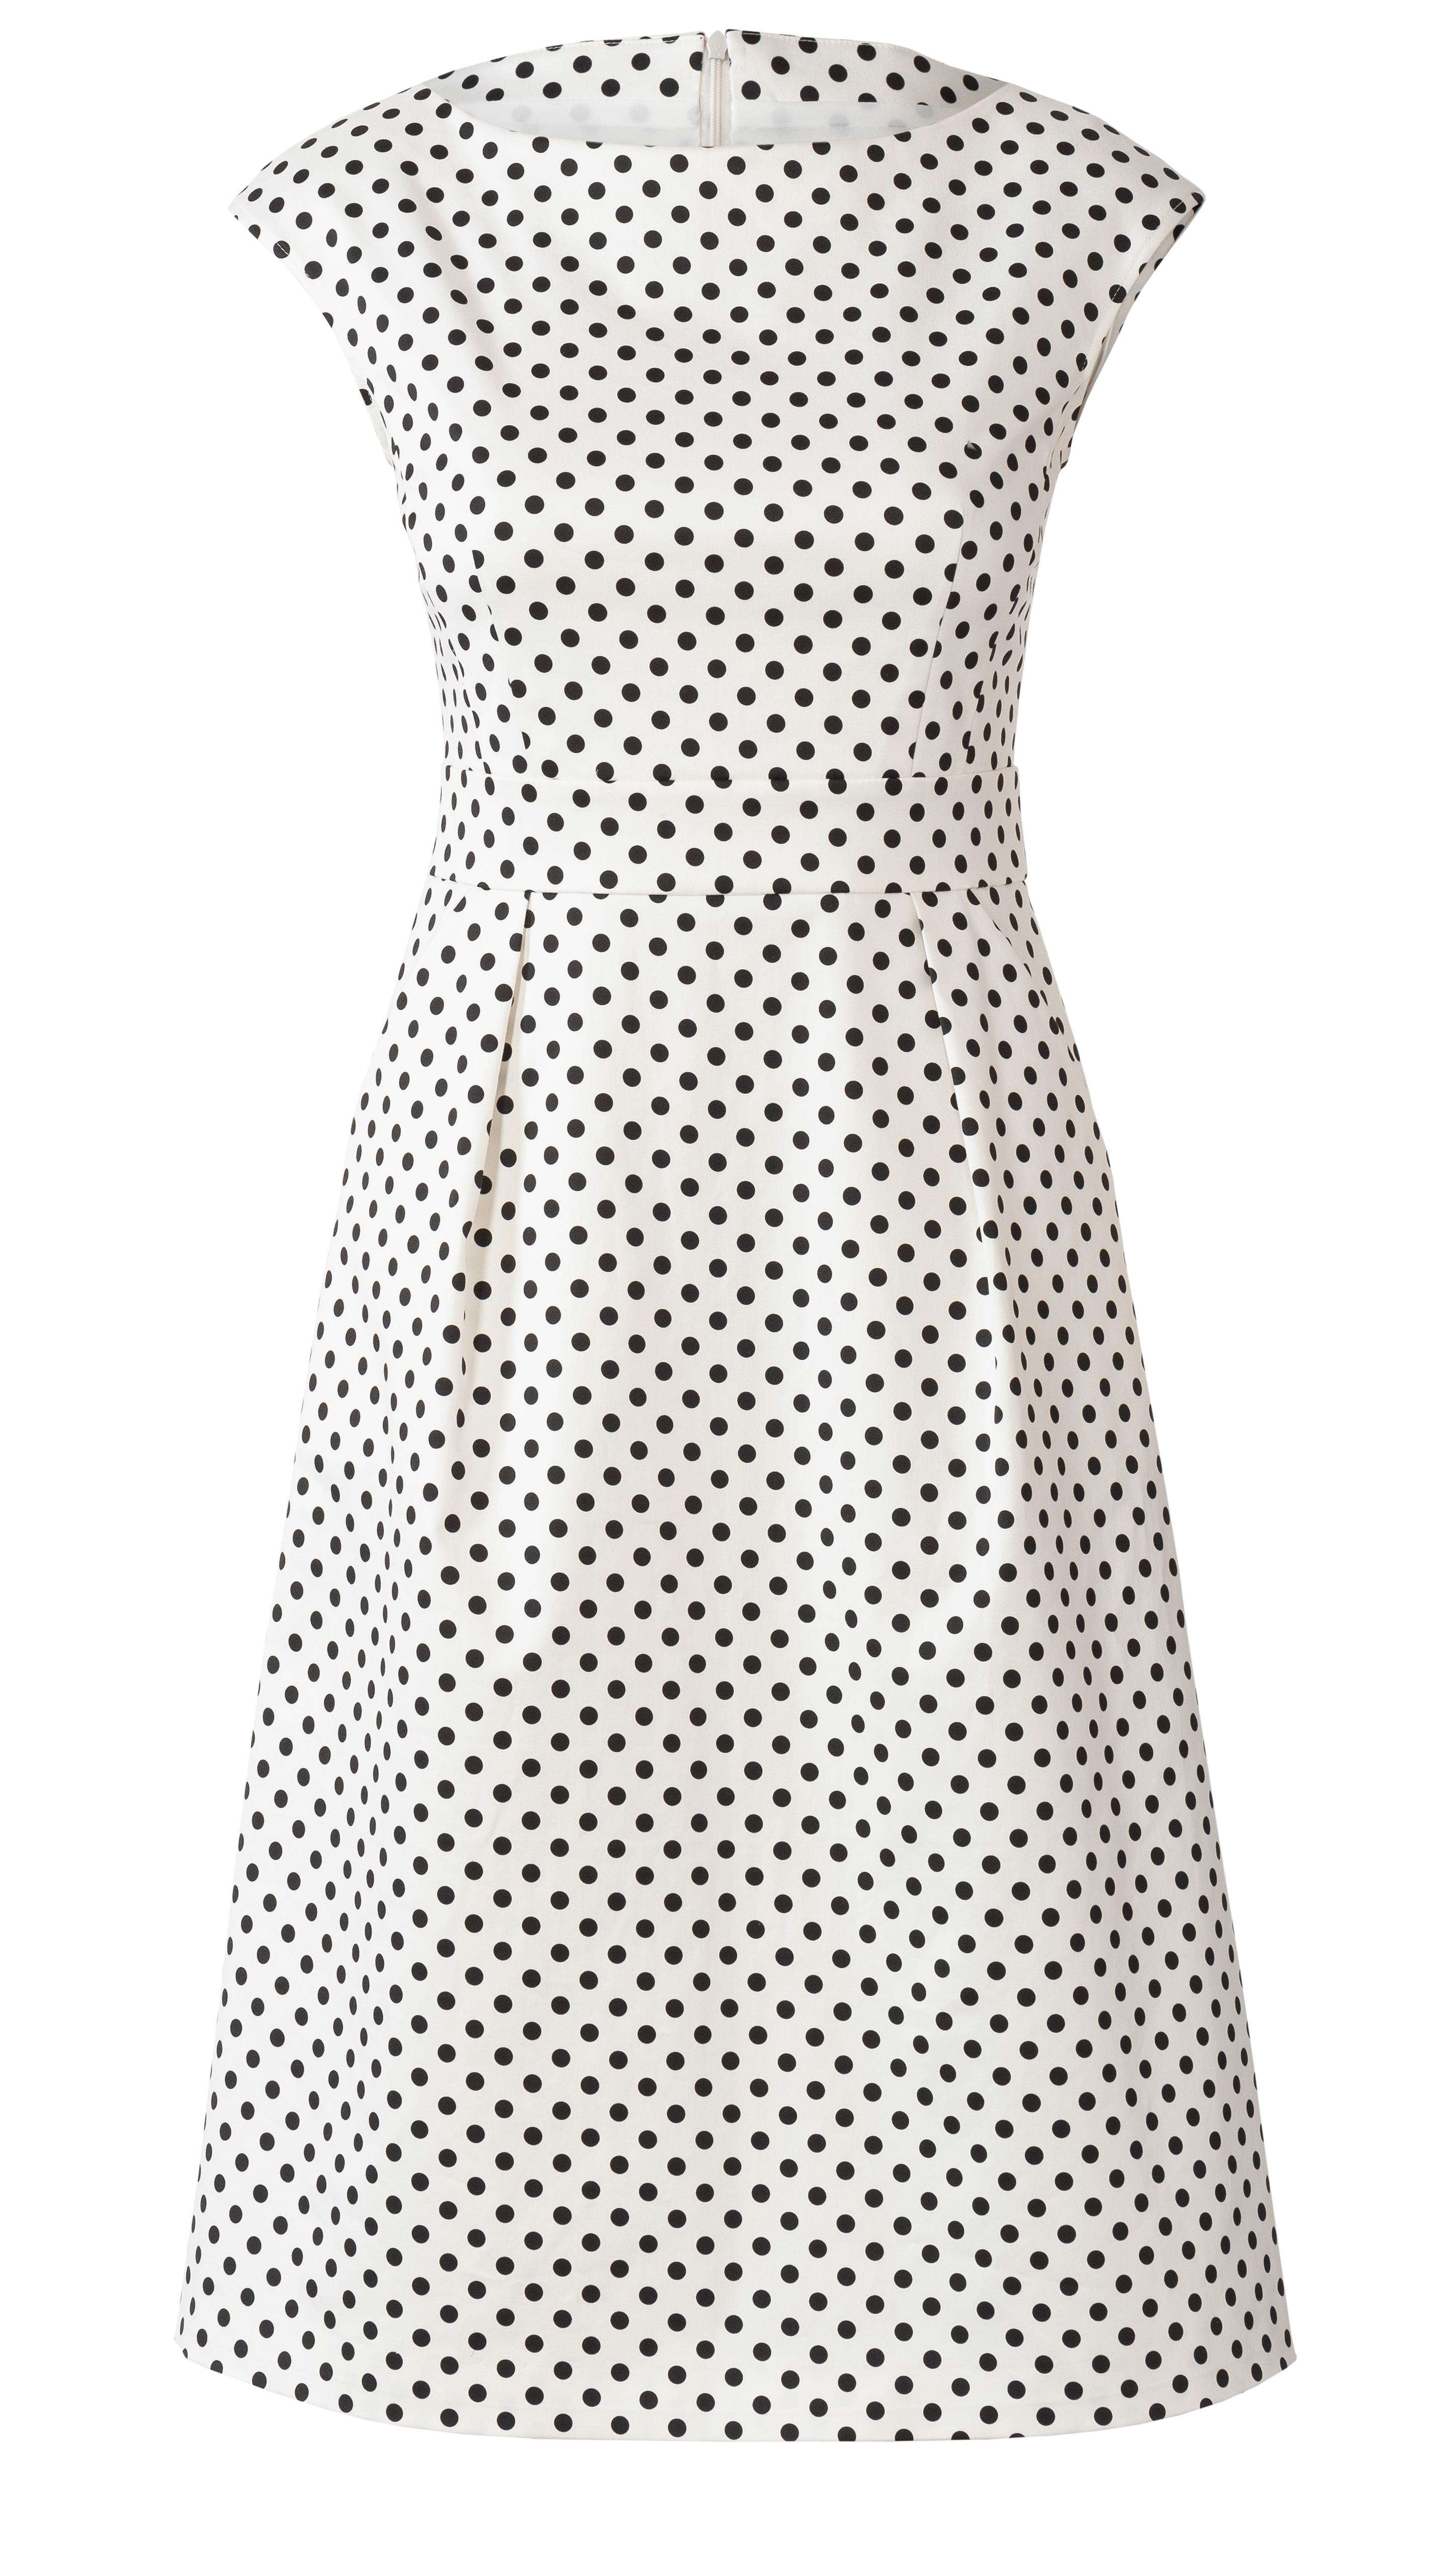 Burda B6239 Dress Sewing Pattern